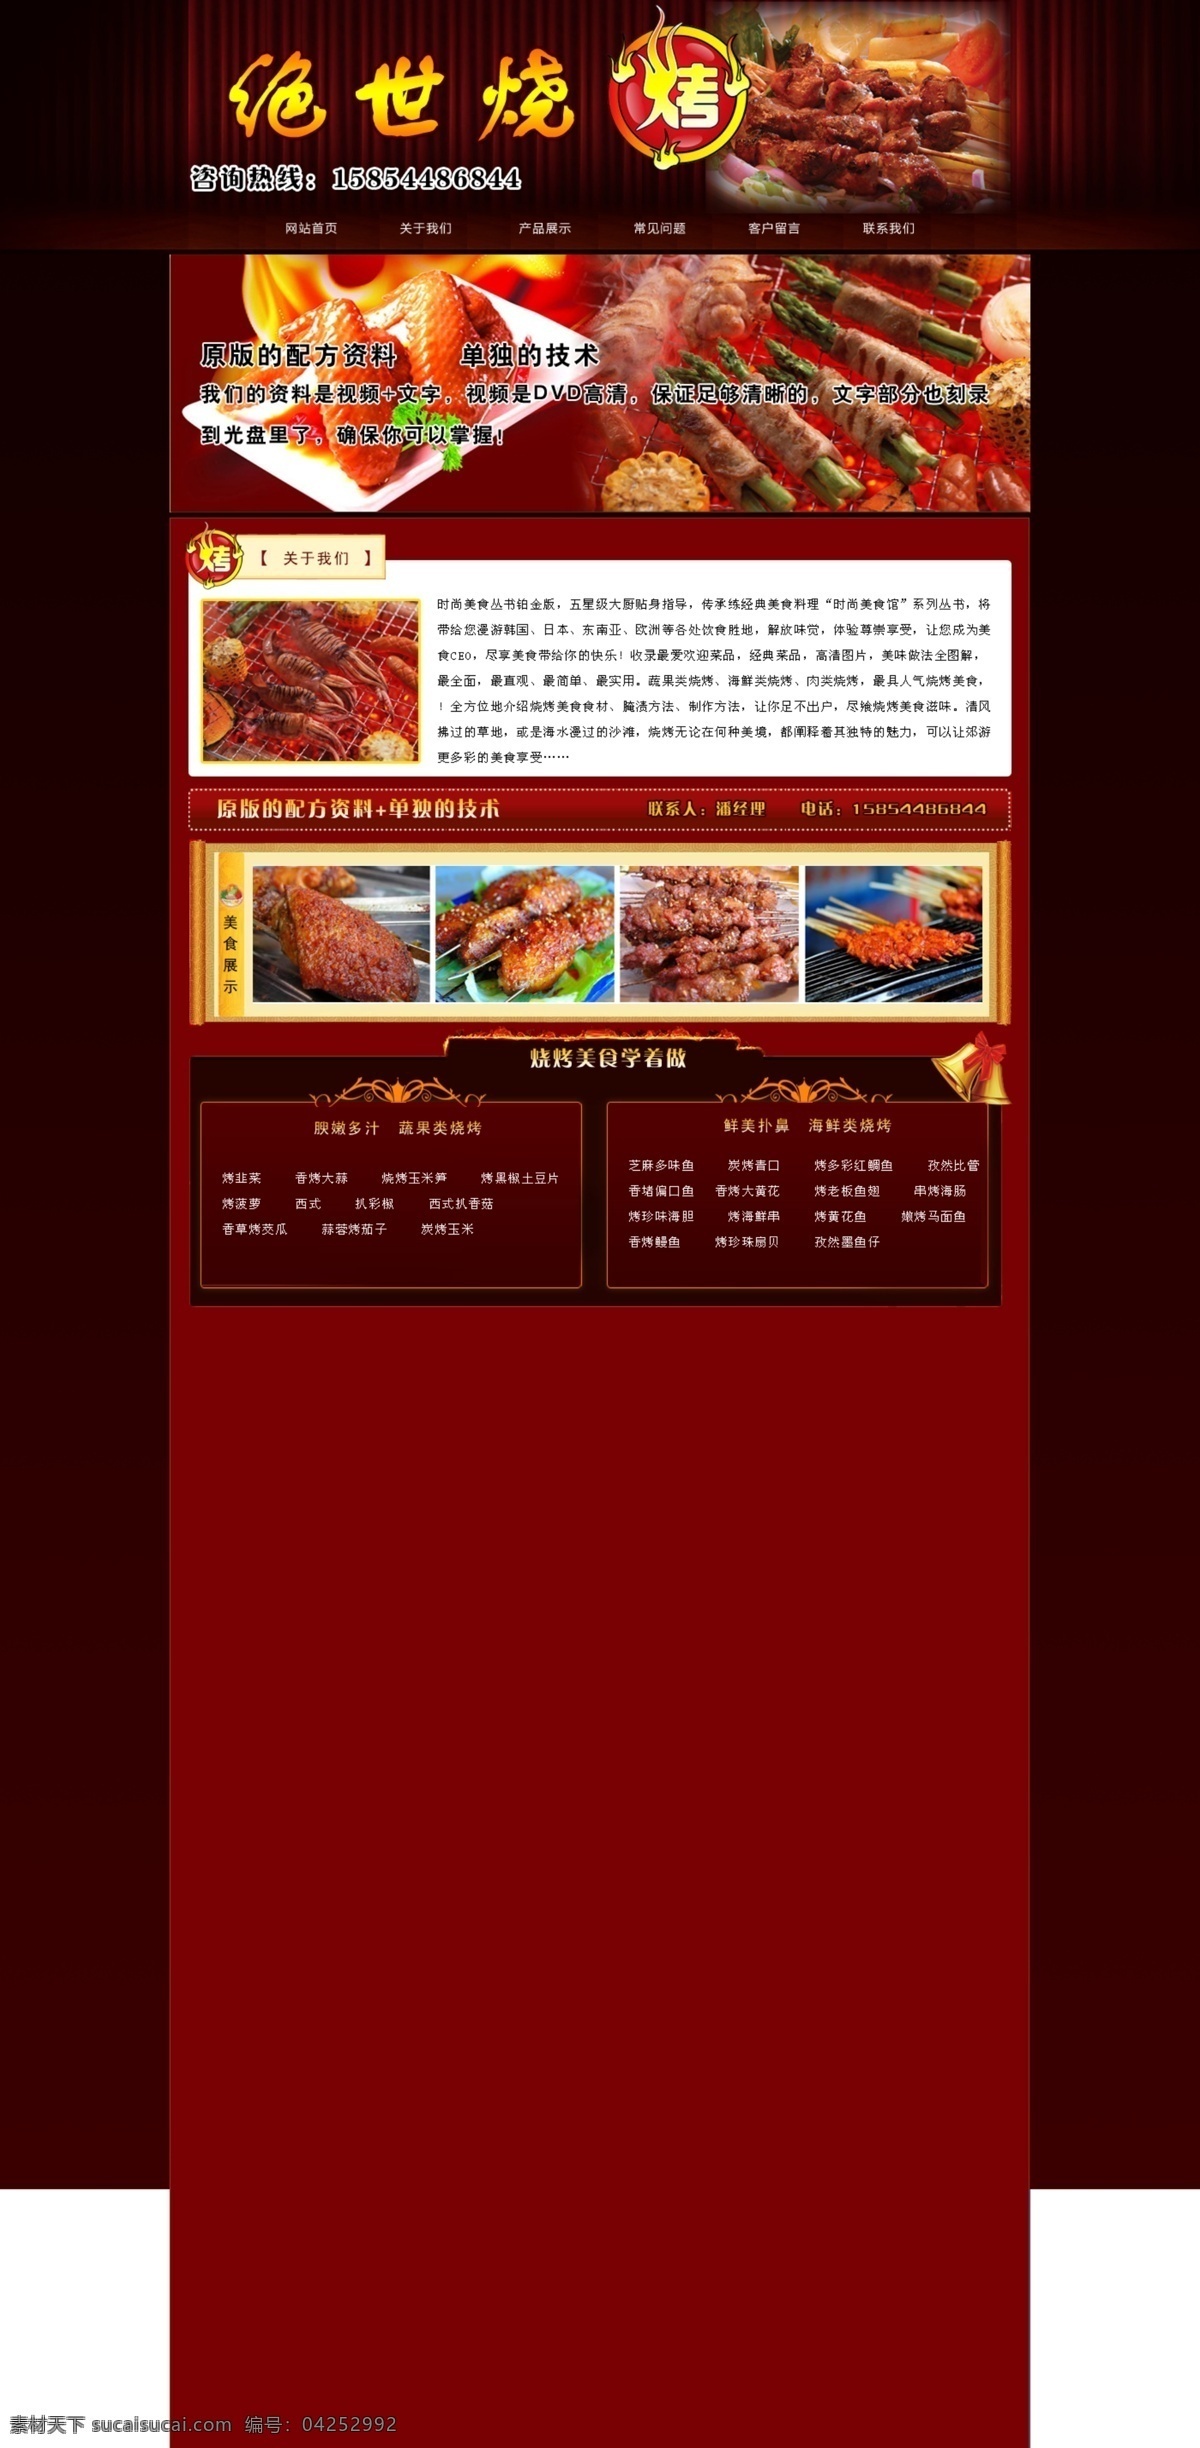 烤肉 美食城 烧烤 烧烤美食 网页模板 源文件 中文模板 绝世 模板下载 绝世烧烤 网页素材